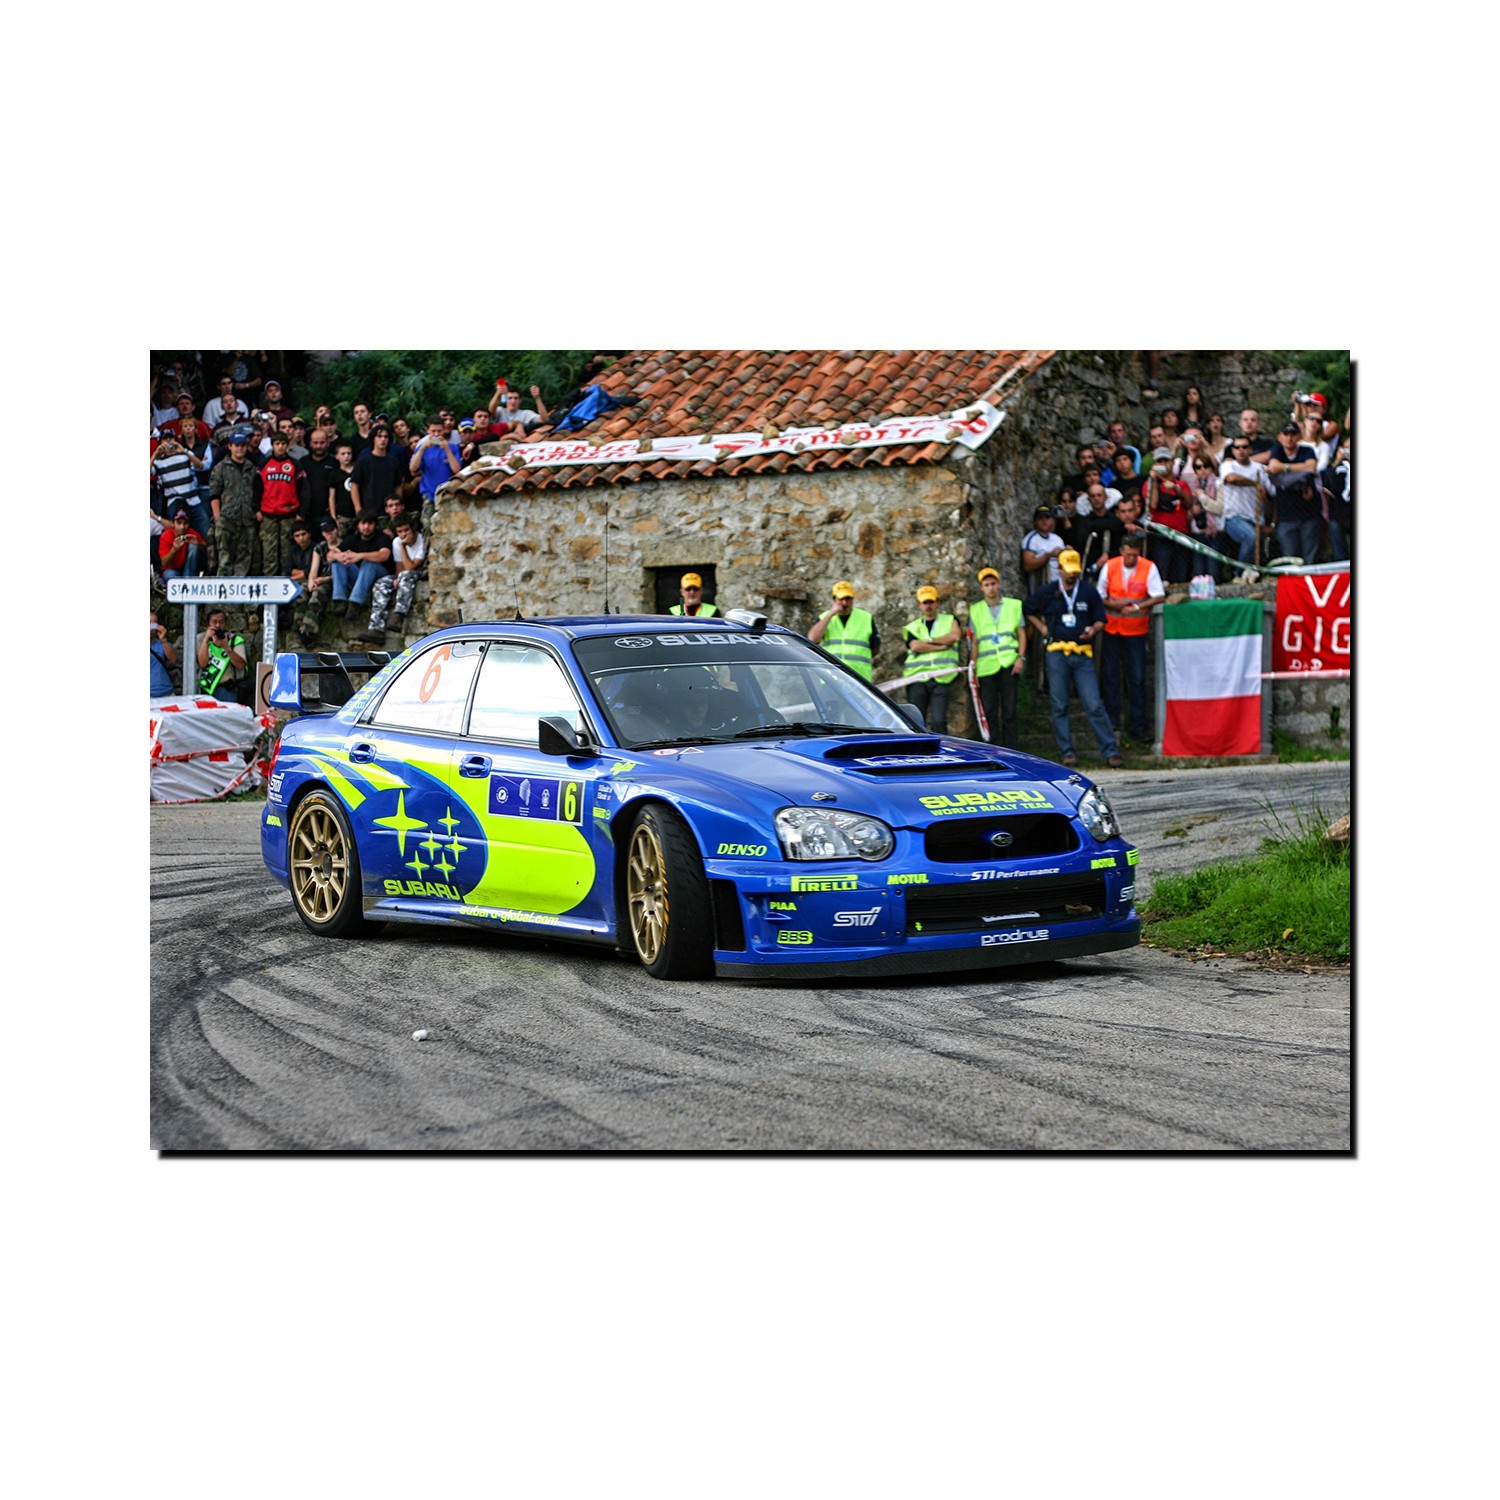 scheidsrechter tent Rose kleur Canvas Picture Stéphane Sarrazin / Denis Giraudet - Subaru Impreza S11 WRC 120  x 80 cm | Accessories \ Canvas Pictures | F1store.net